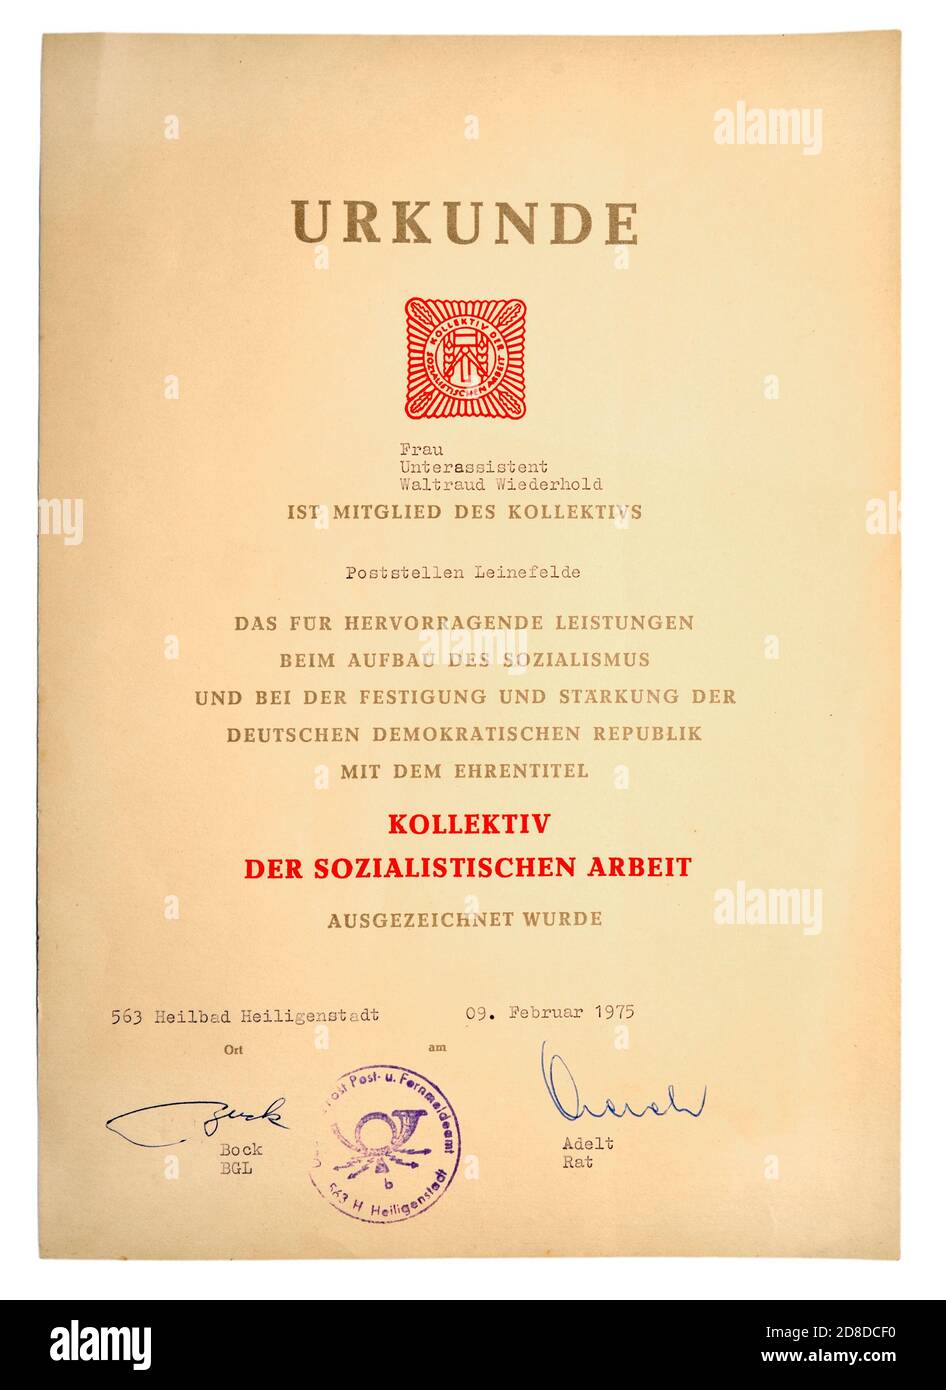 Certificato tedesco-orientale rilasciato all'assistente post-junior Waltraud Wiederhold per il suo eccellente risultato nella causa del socialismo in tedesco. Foto Stock